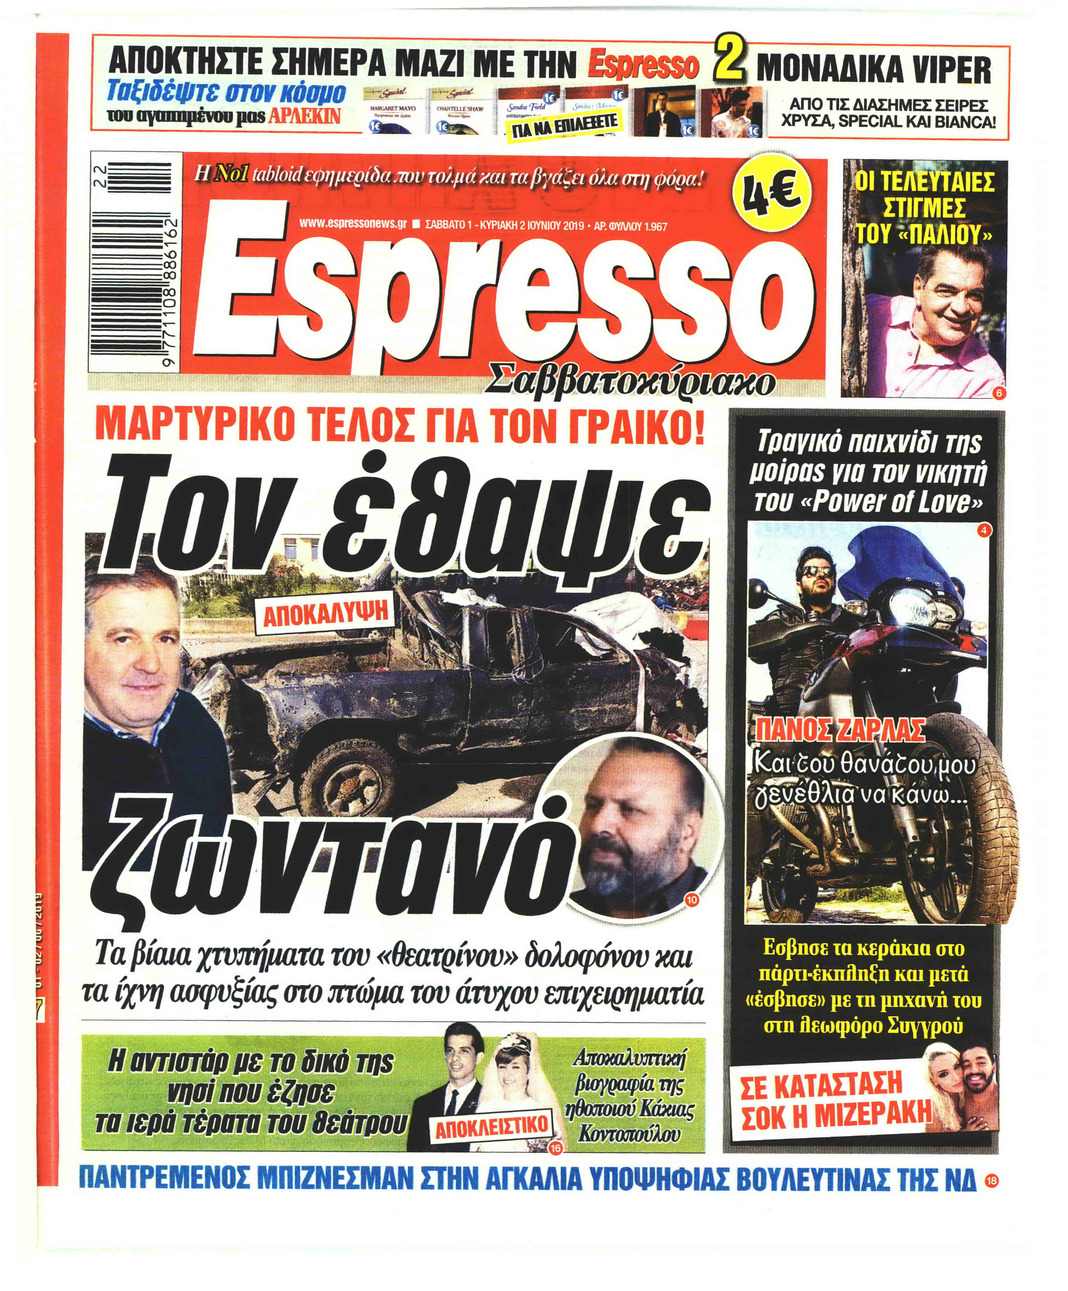 Πρωτοσέλιδο εφημερίδας Espresso